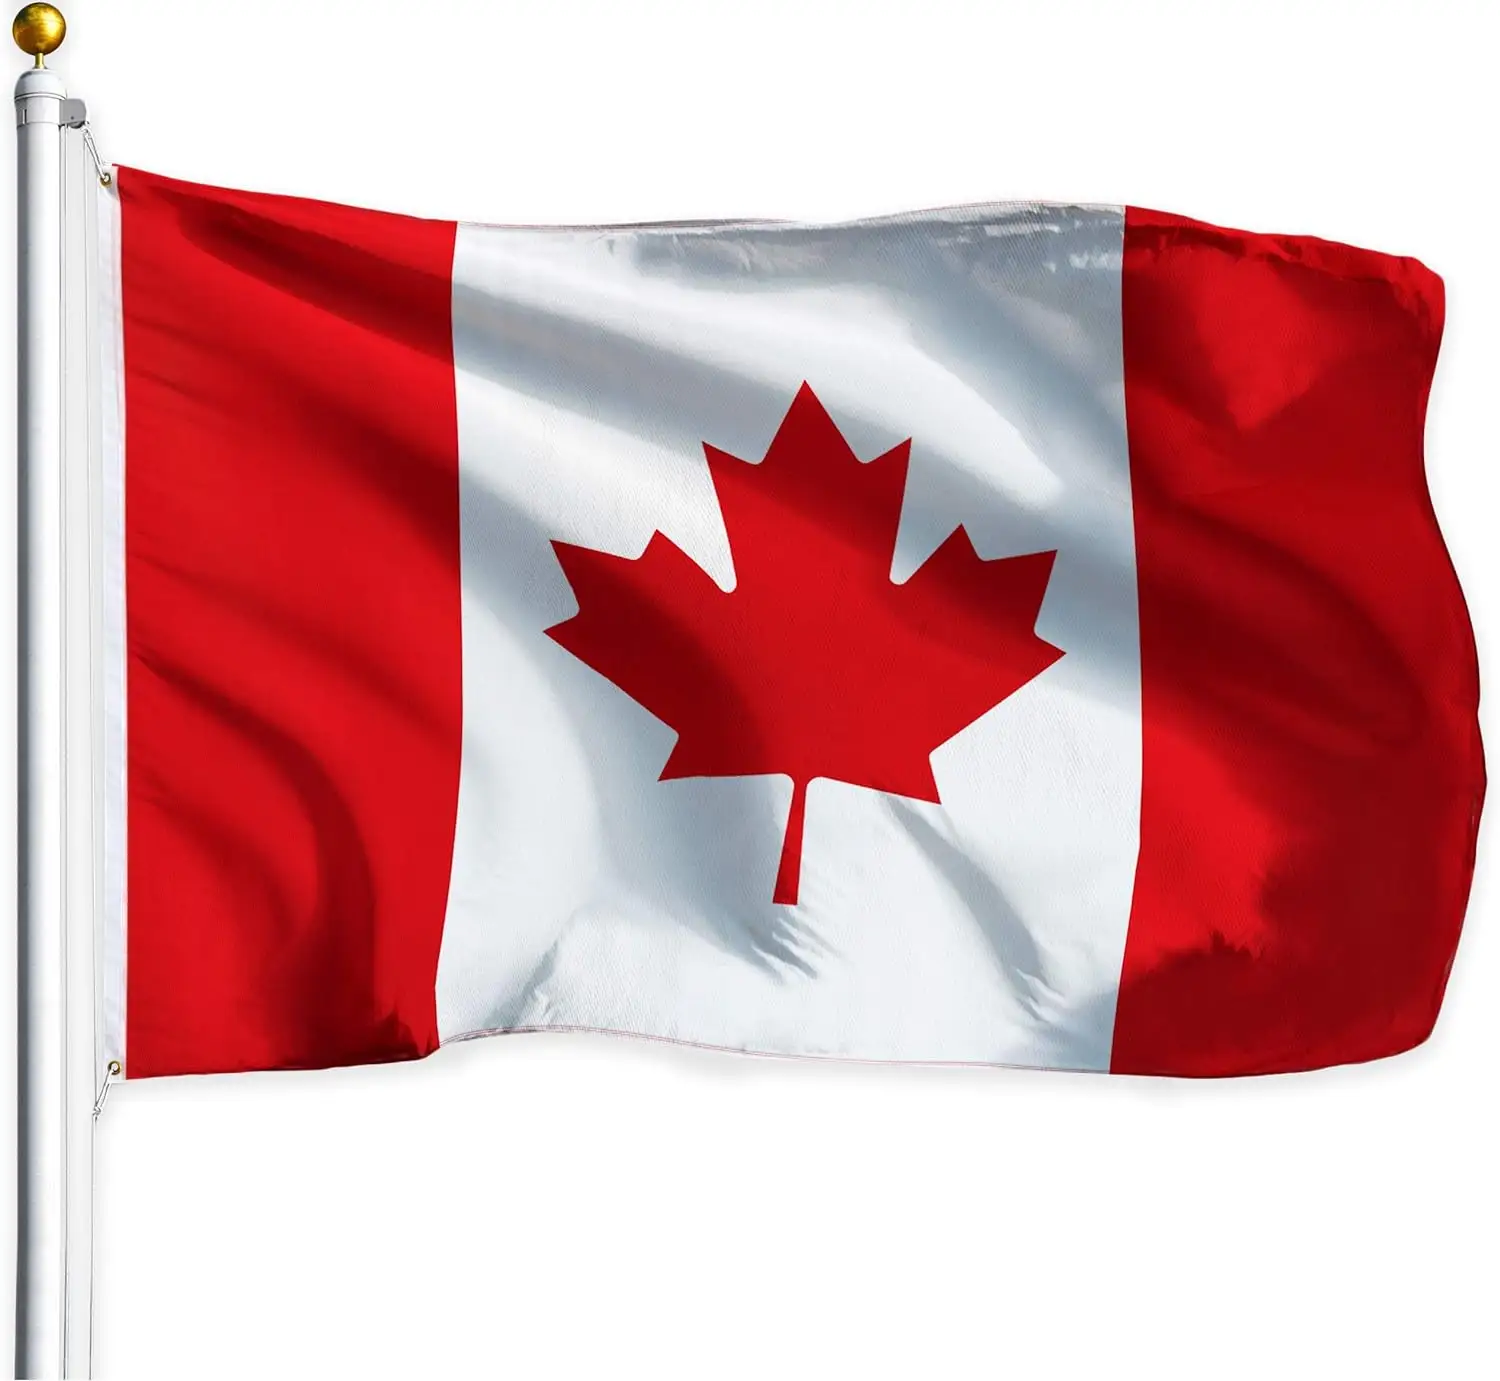 Vente en gros Polyester 100% durable de haute qualité 3x5ft Stock CA Feuille d'érable imprimé drapeau canadien du Canada